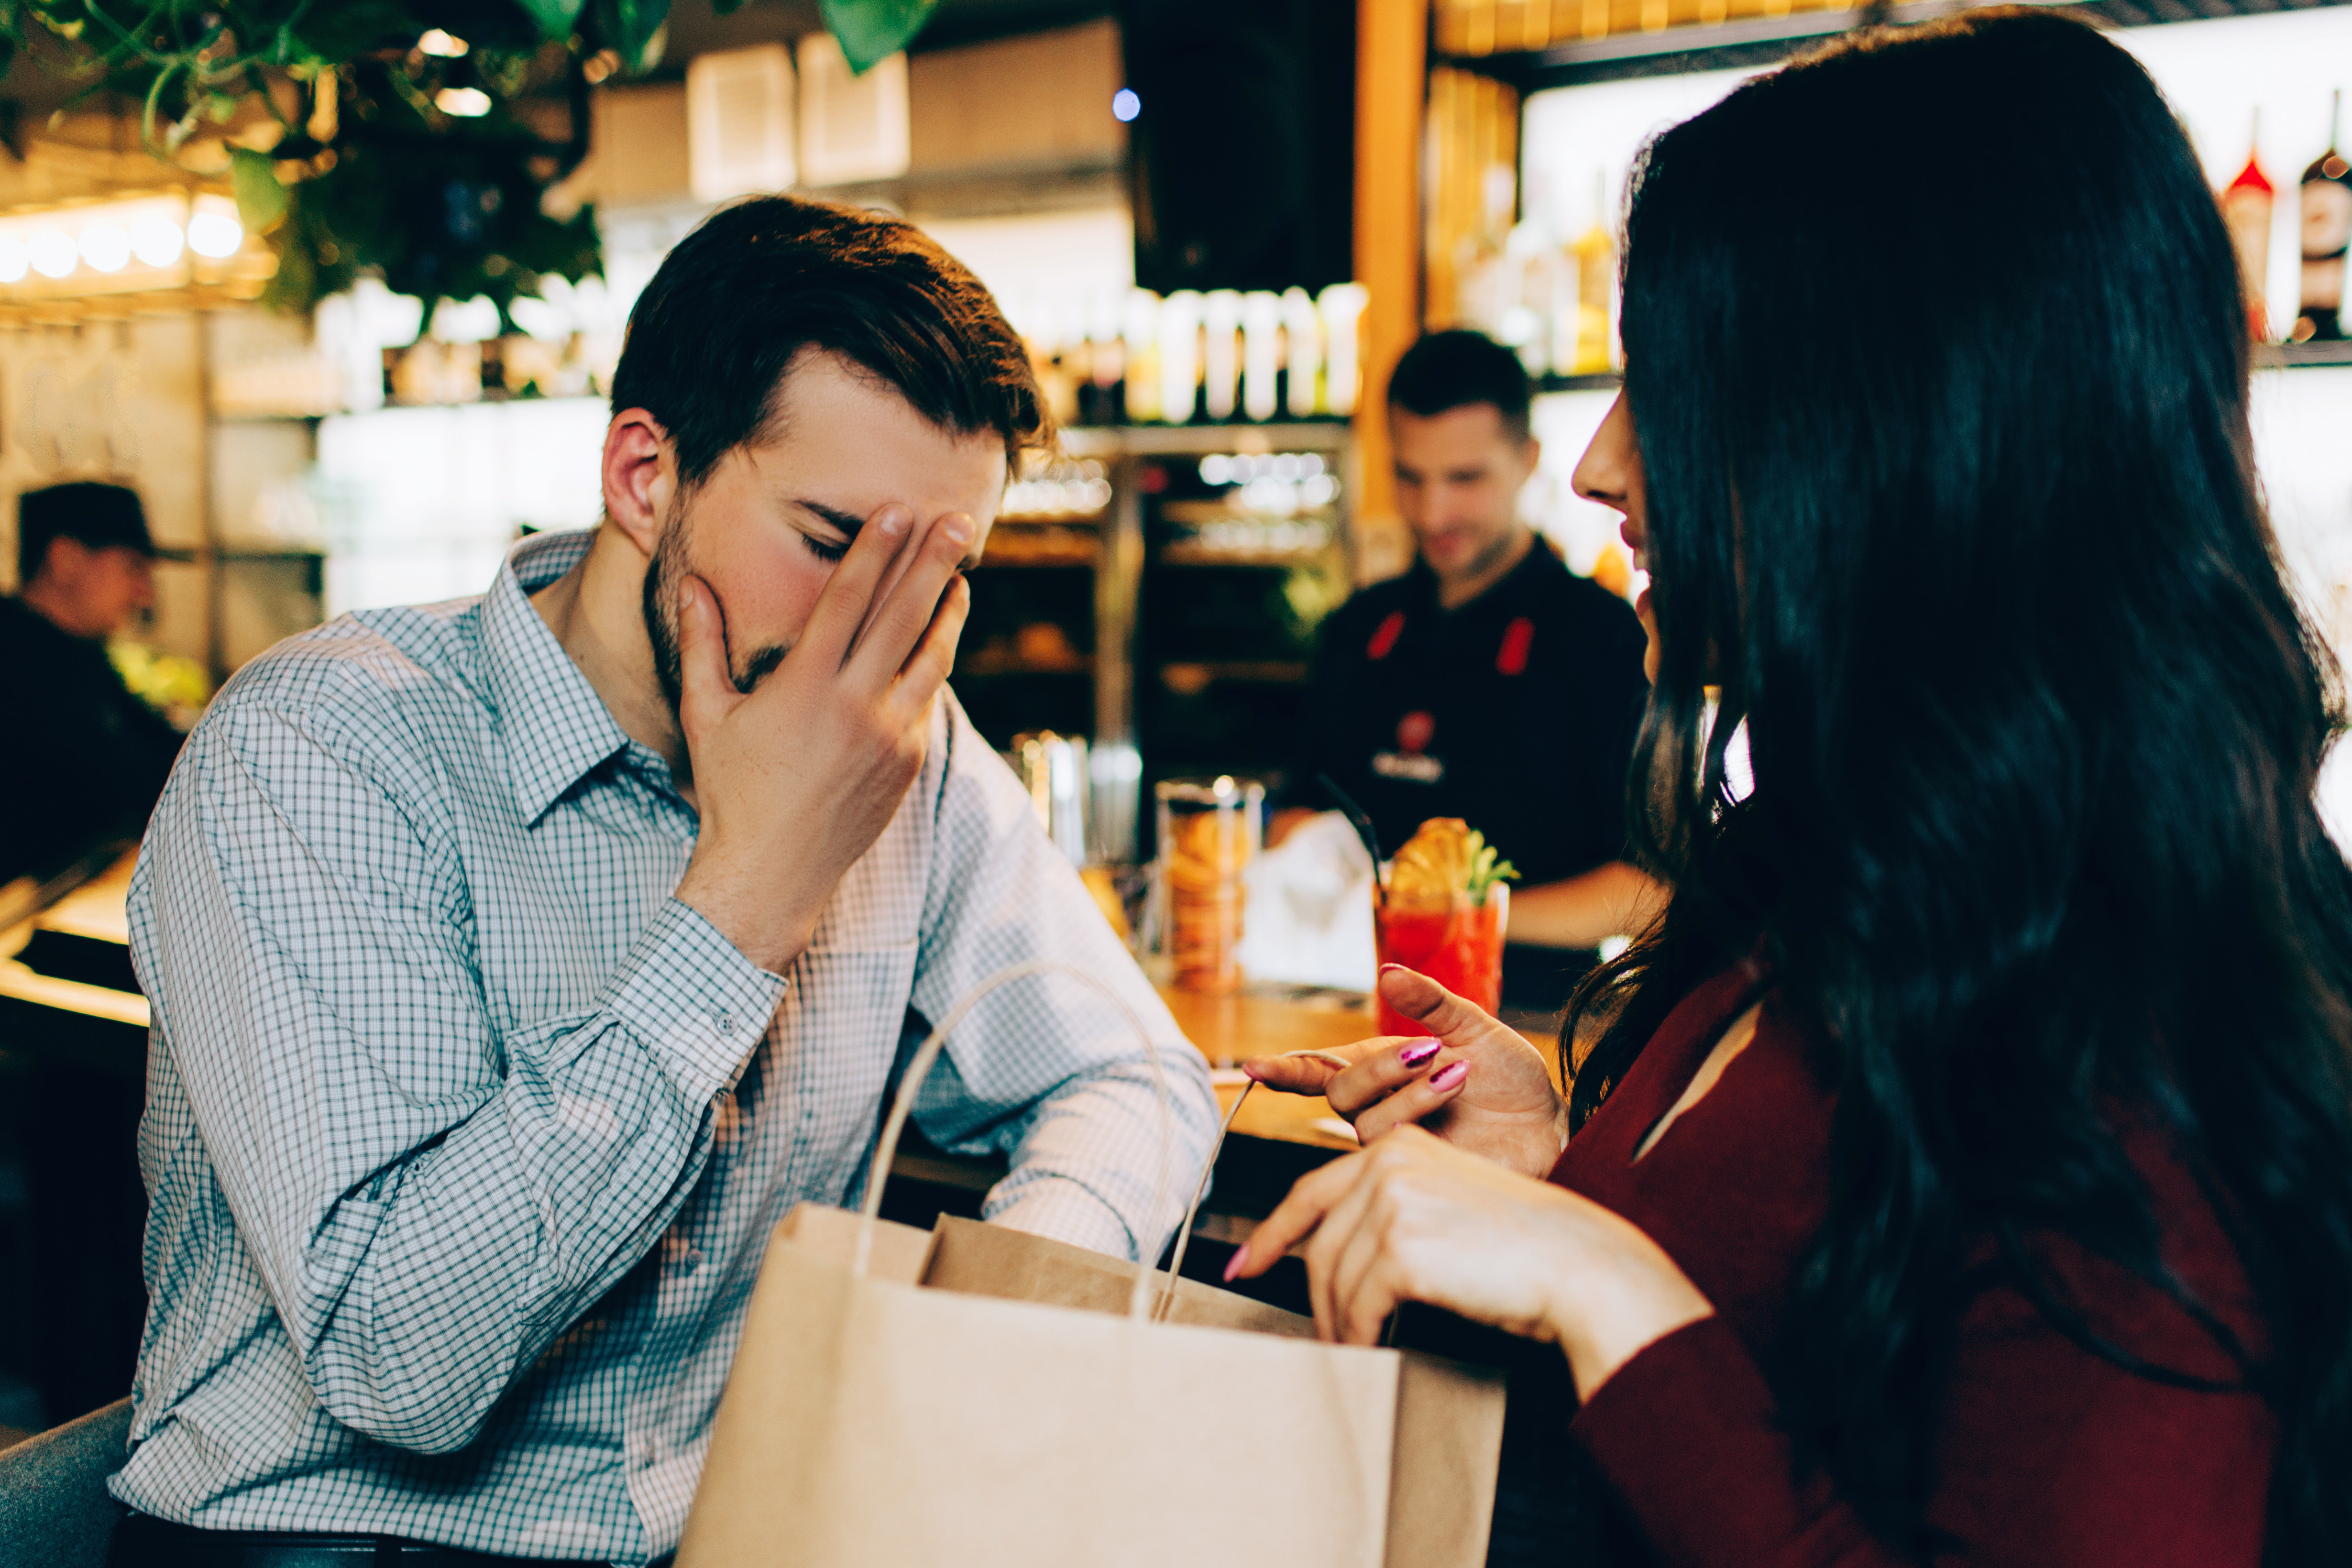 Un hombre apoya la cara en la mano mientras la mujer que tiene delante sigue hablando. | Foto: Shutterstock